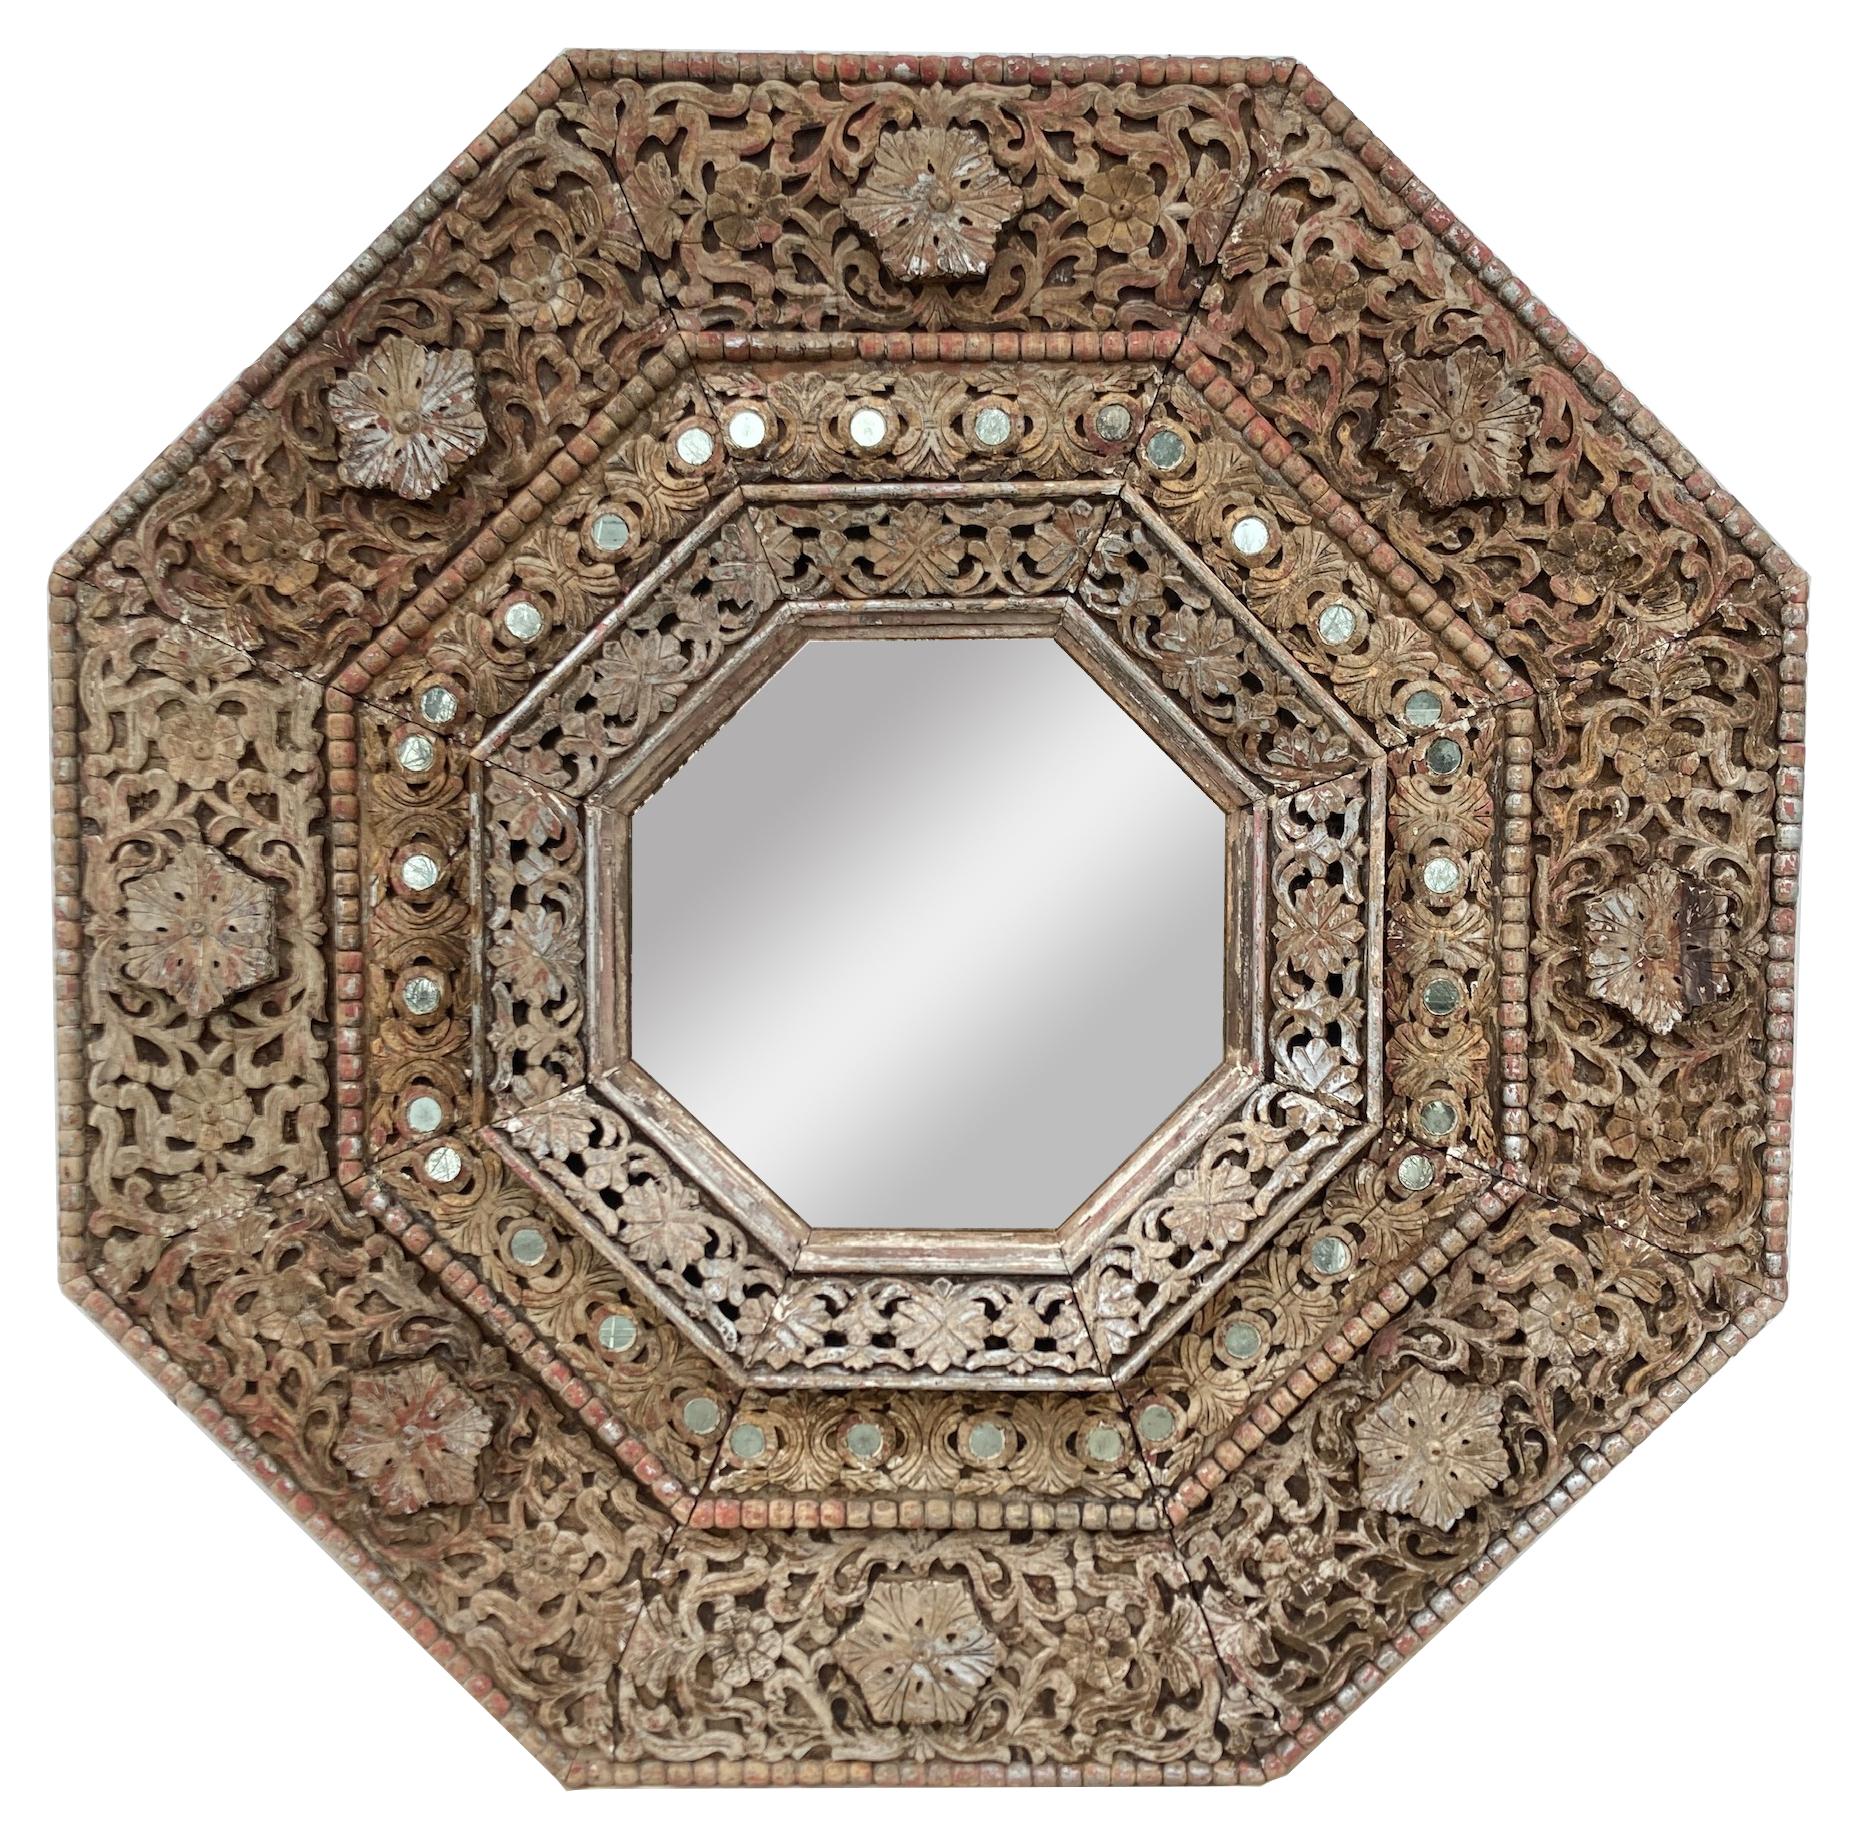 Monumentaler achteckiger geschnitzter indischer Spiegel aus den 1950er Jahren. Mit einer Größe von 5 1/2 Fuß mal 5 1/2 Fuß ist dieser Spiegel ein echtes Statement. Die tiefe Schnitzerei verleiht ihm ein
Die verwitterte Oberfläche und die